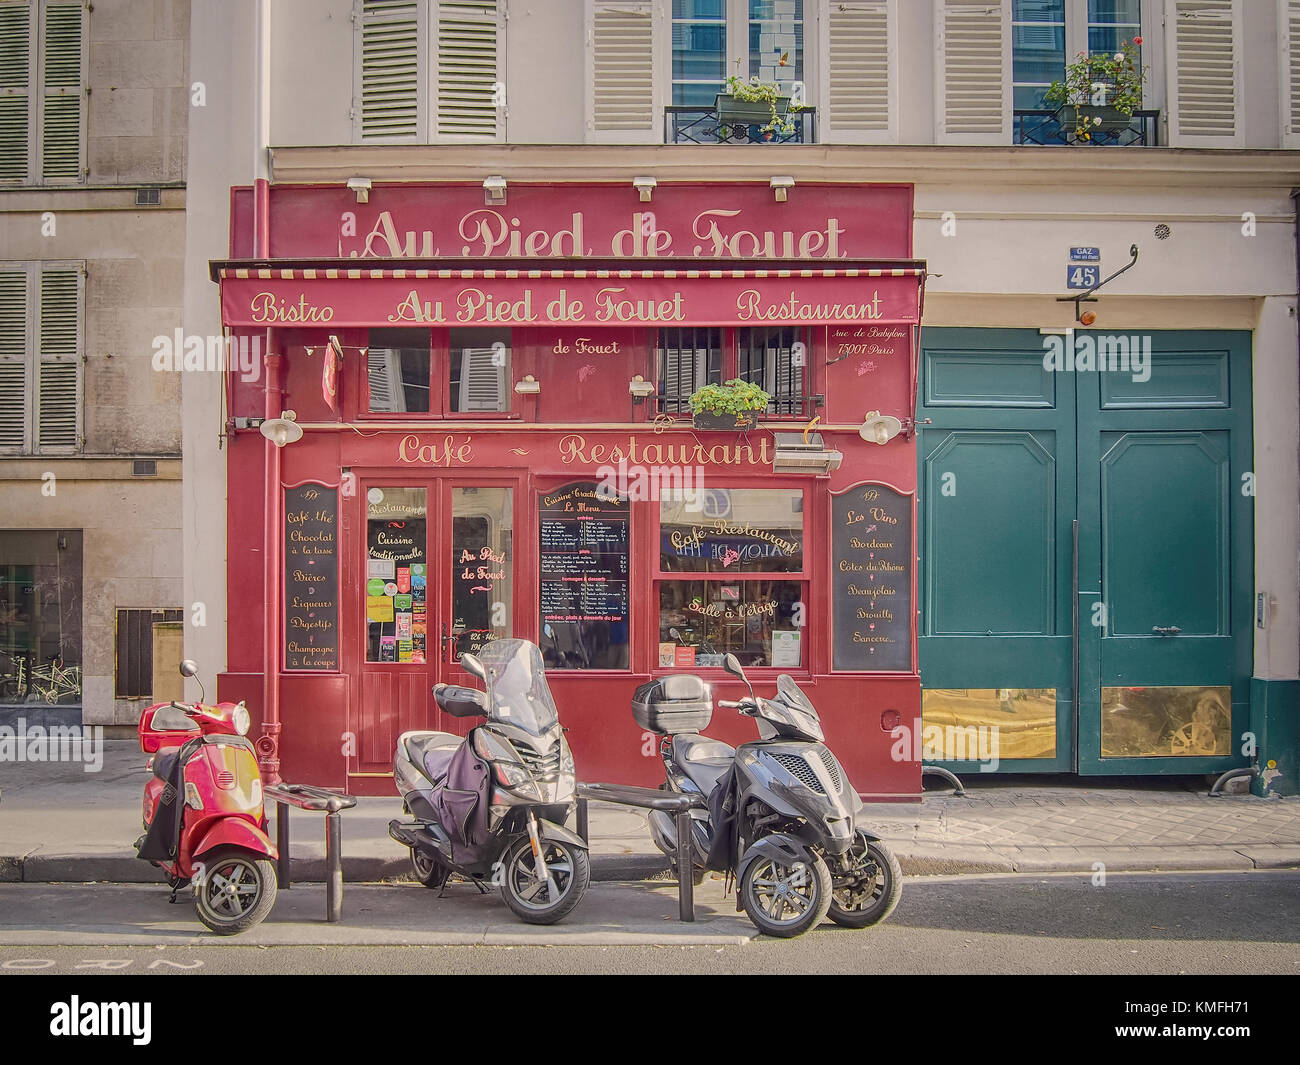 Paris, France - 5 mai 2016 : un bistrot parisien typique avec des scooters garés devant lui. bistro est un petit restaurant français. Banque D'Images